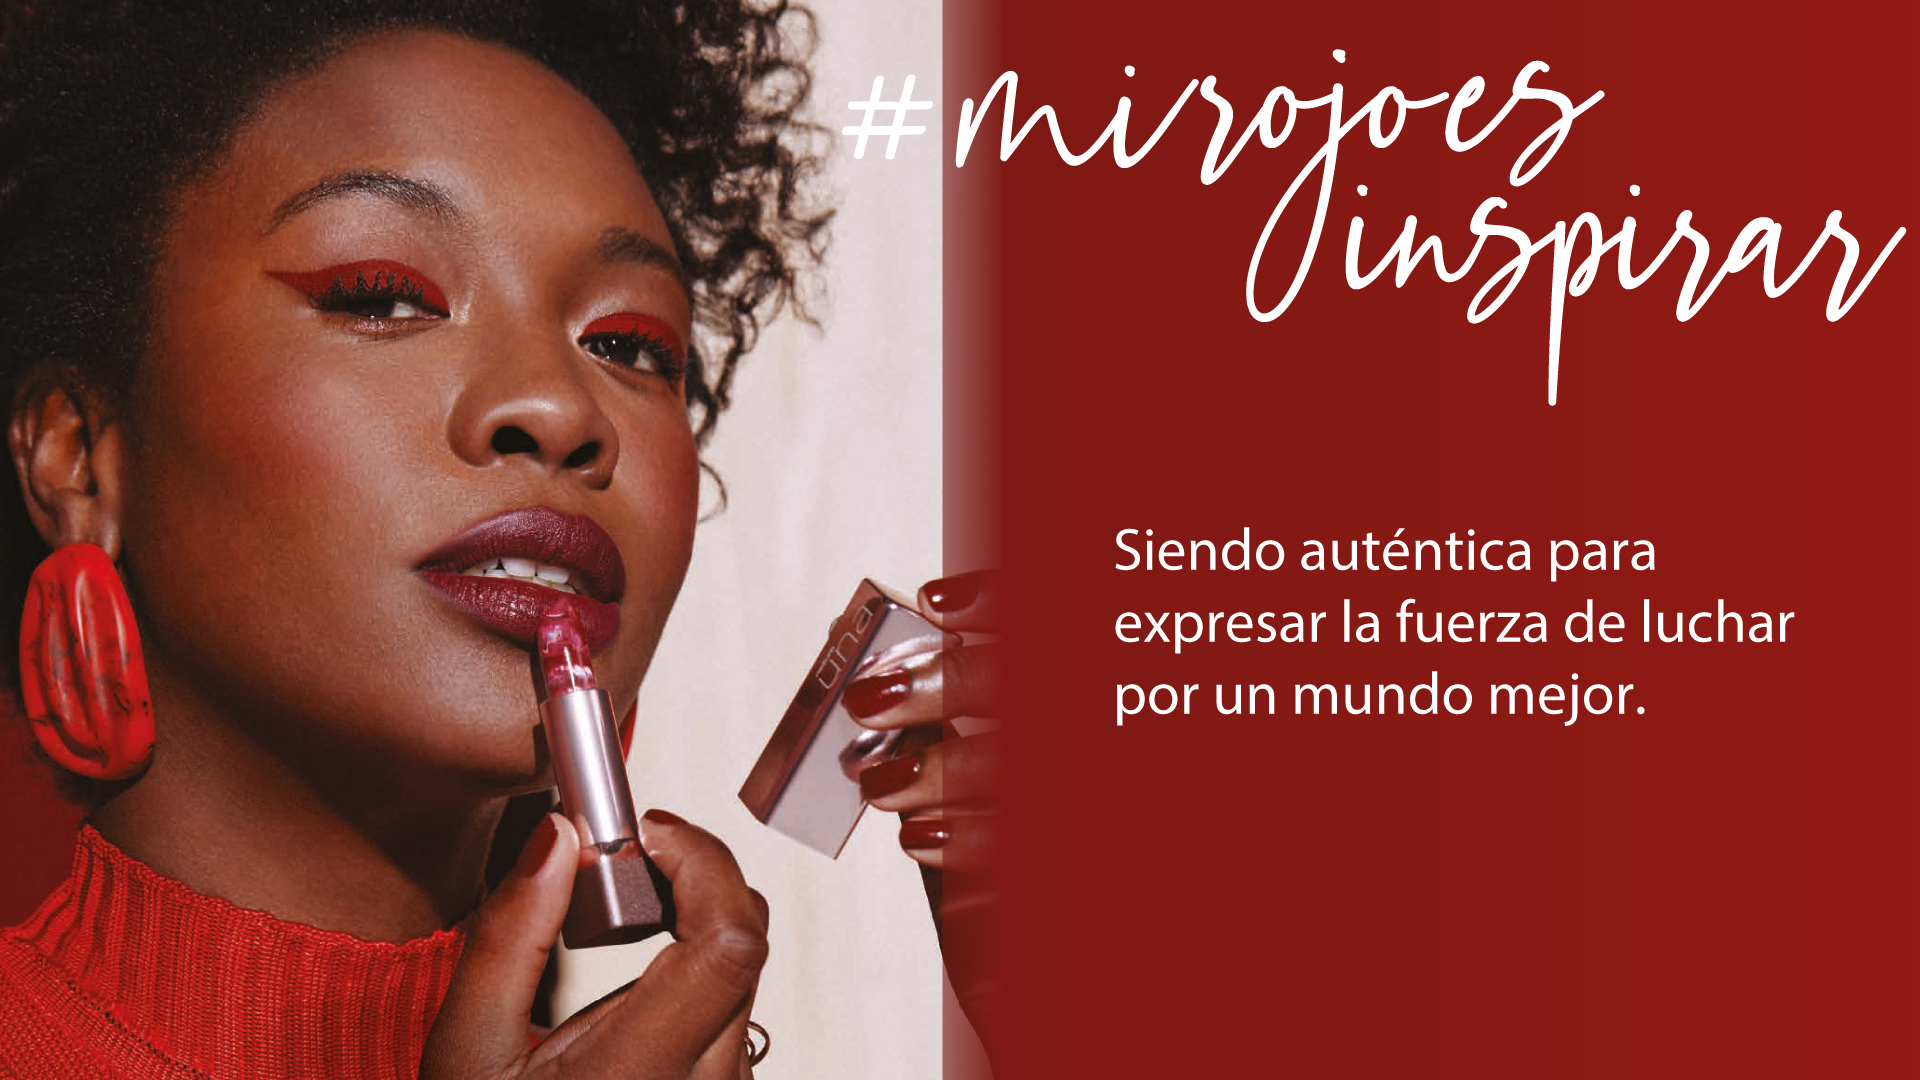 Maquillaje Rojo Natura #MisRojos Labiales, Sombras, Delineador, Esmalte